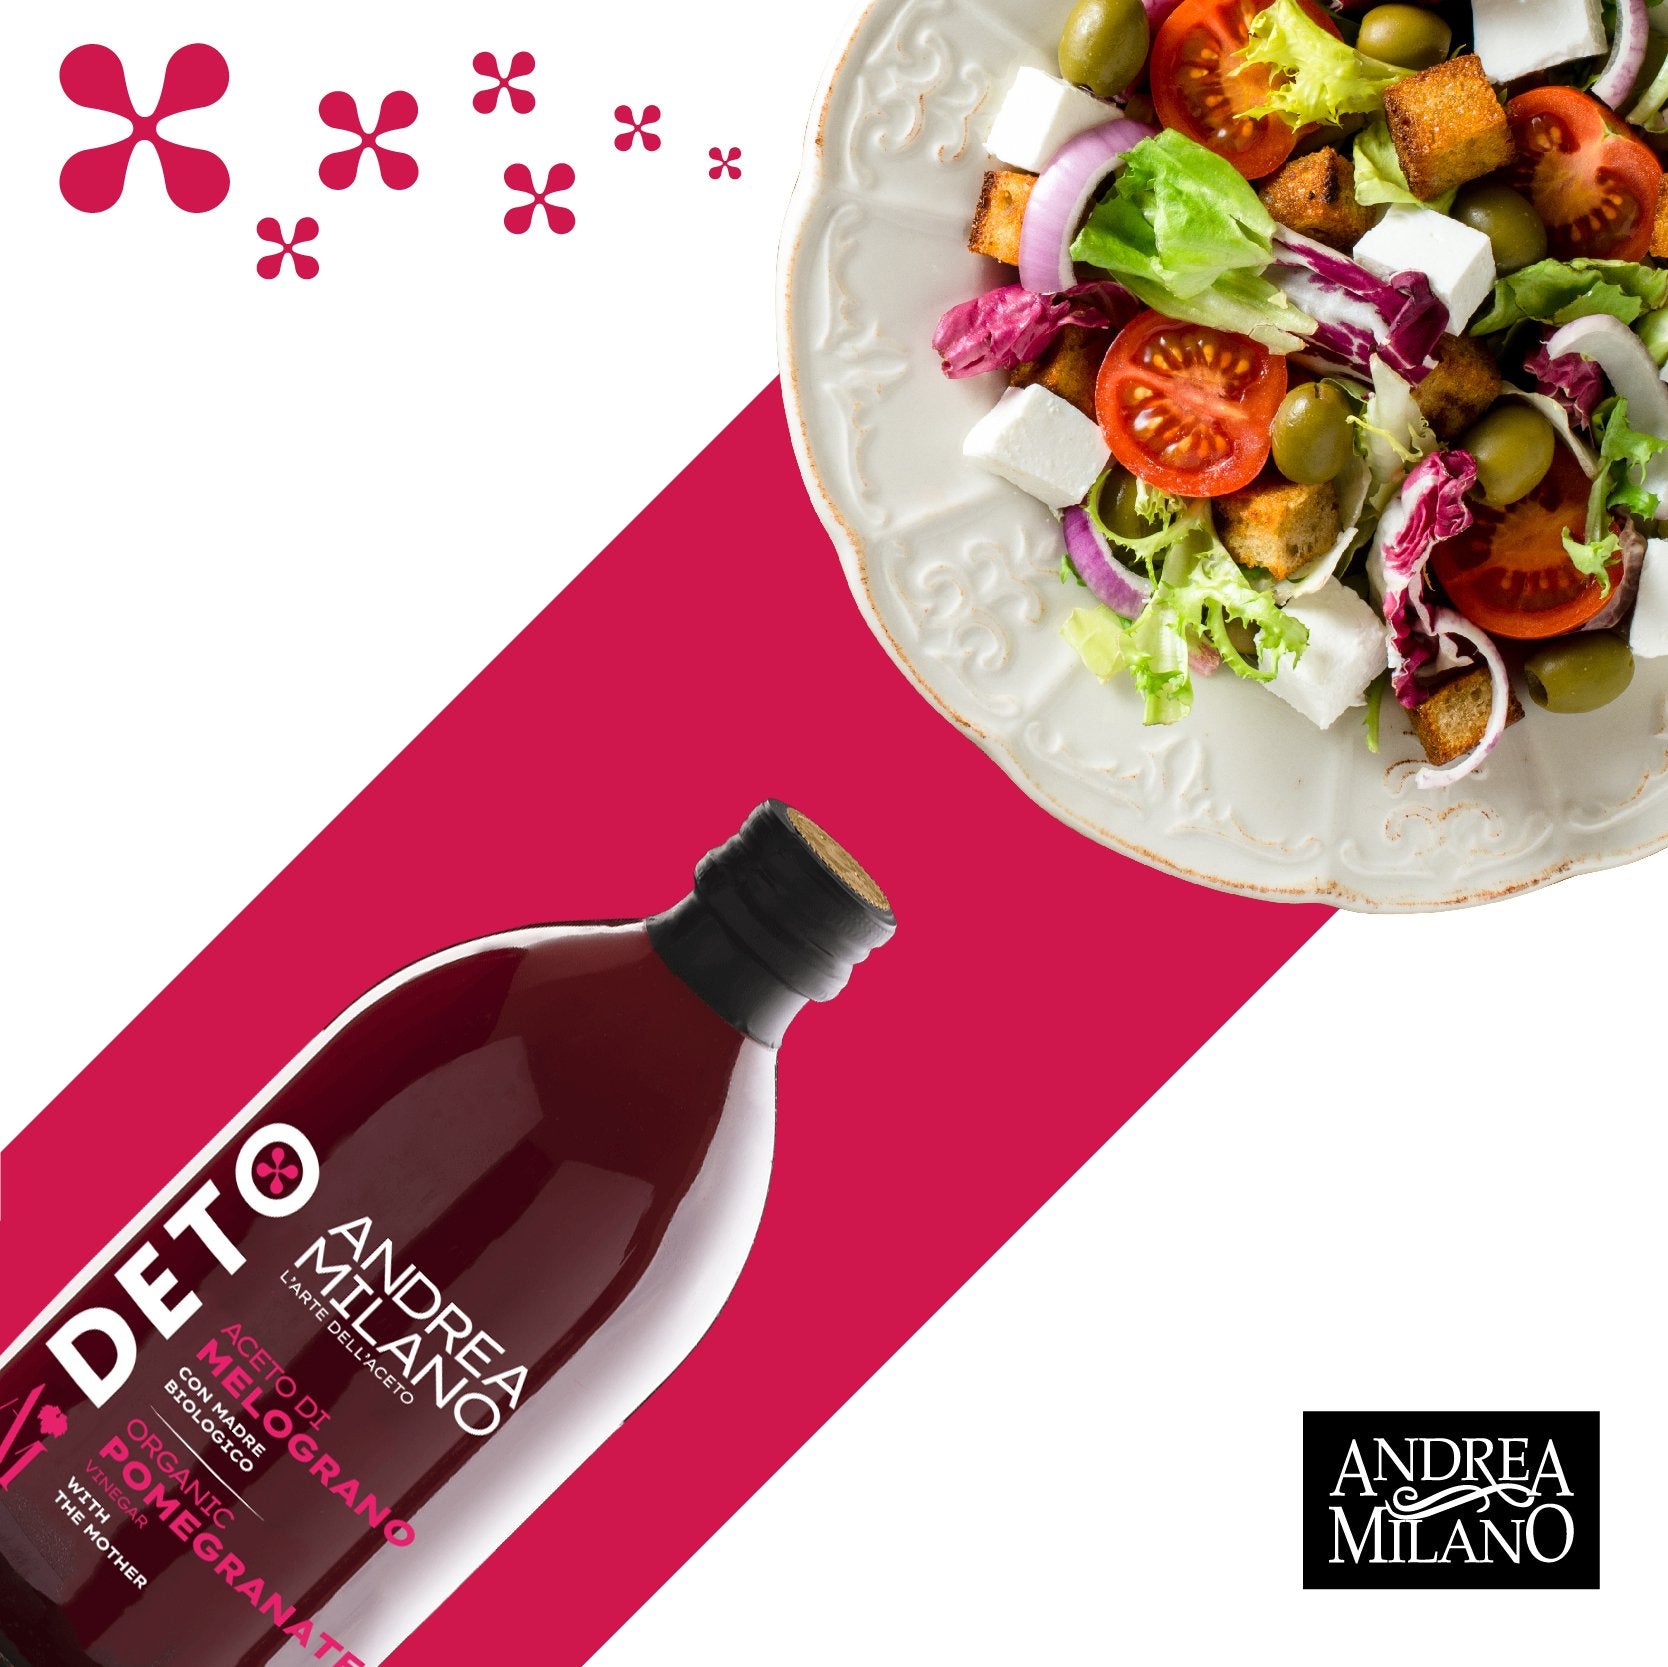 Recipe for Deto Organic Pomegranate Vinegar by Andrea Milano.